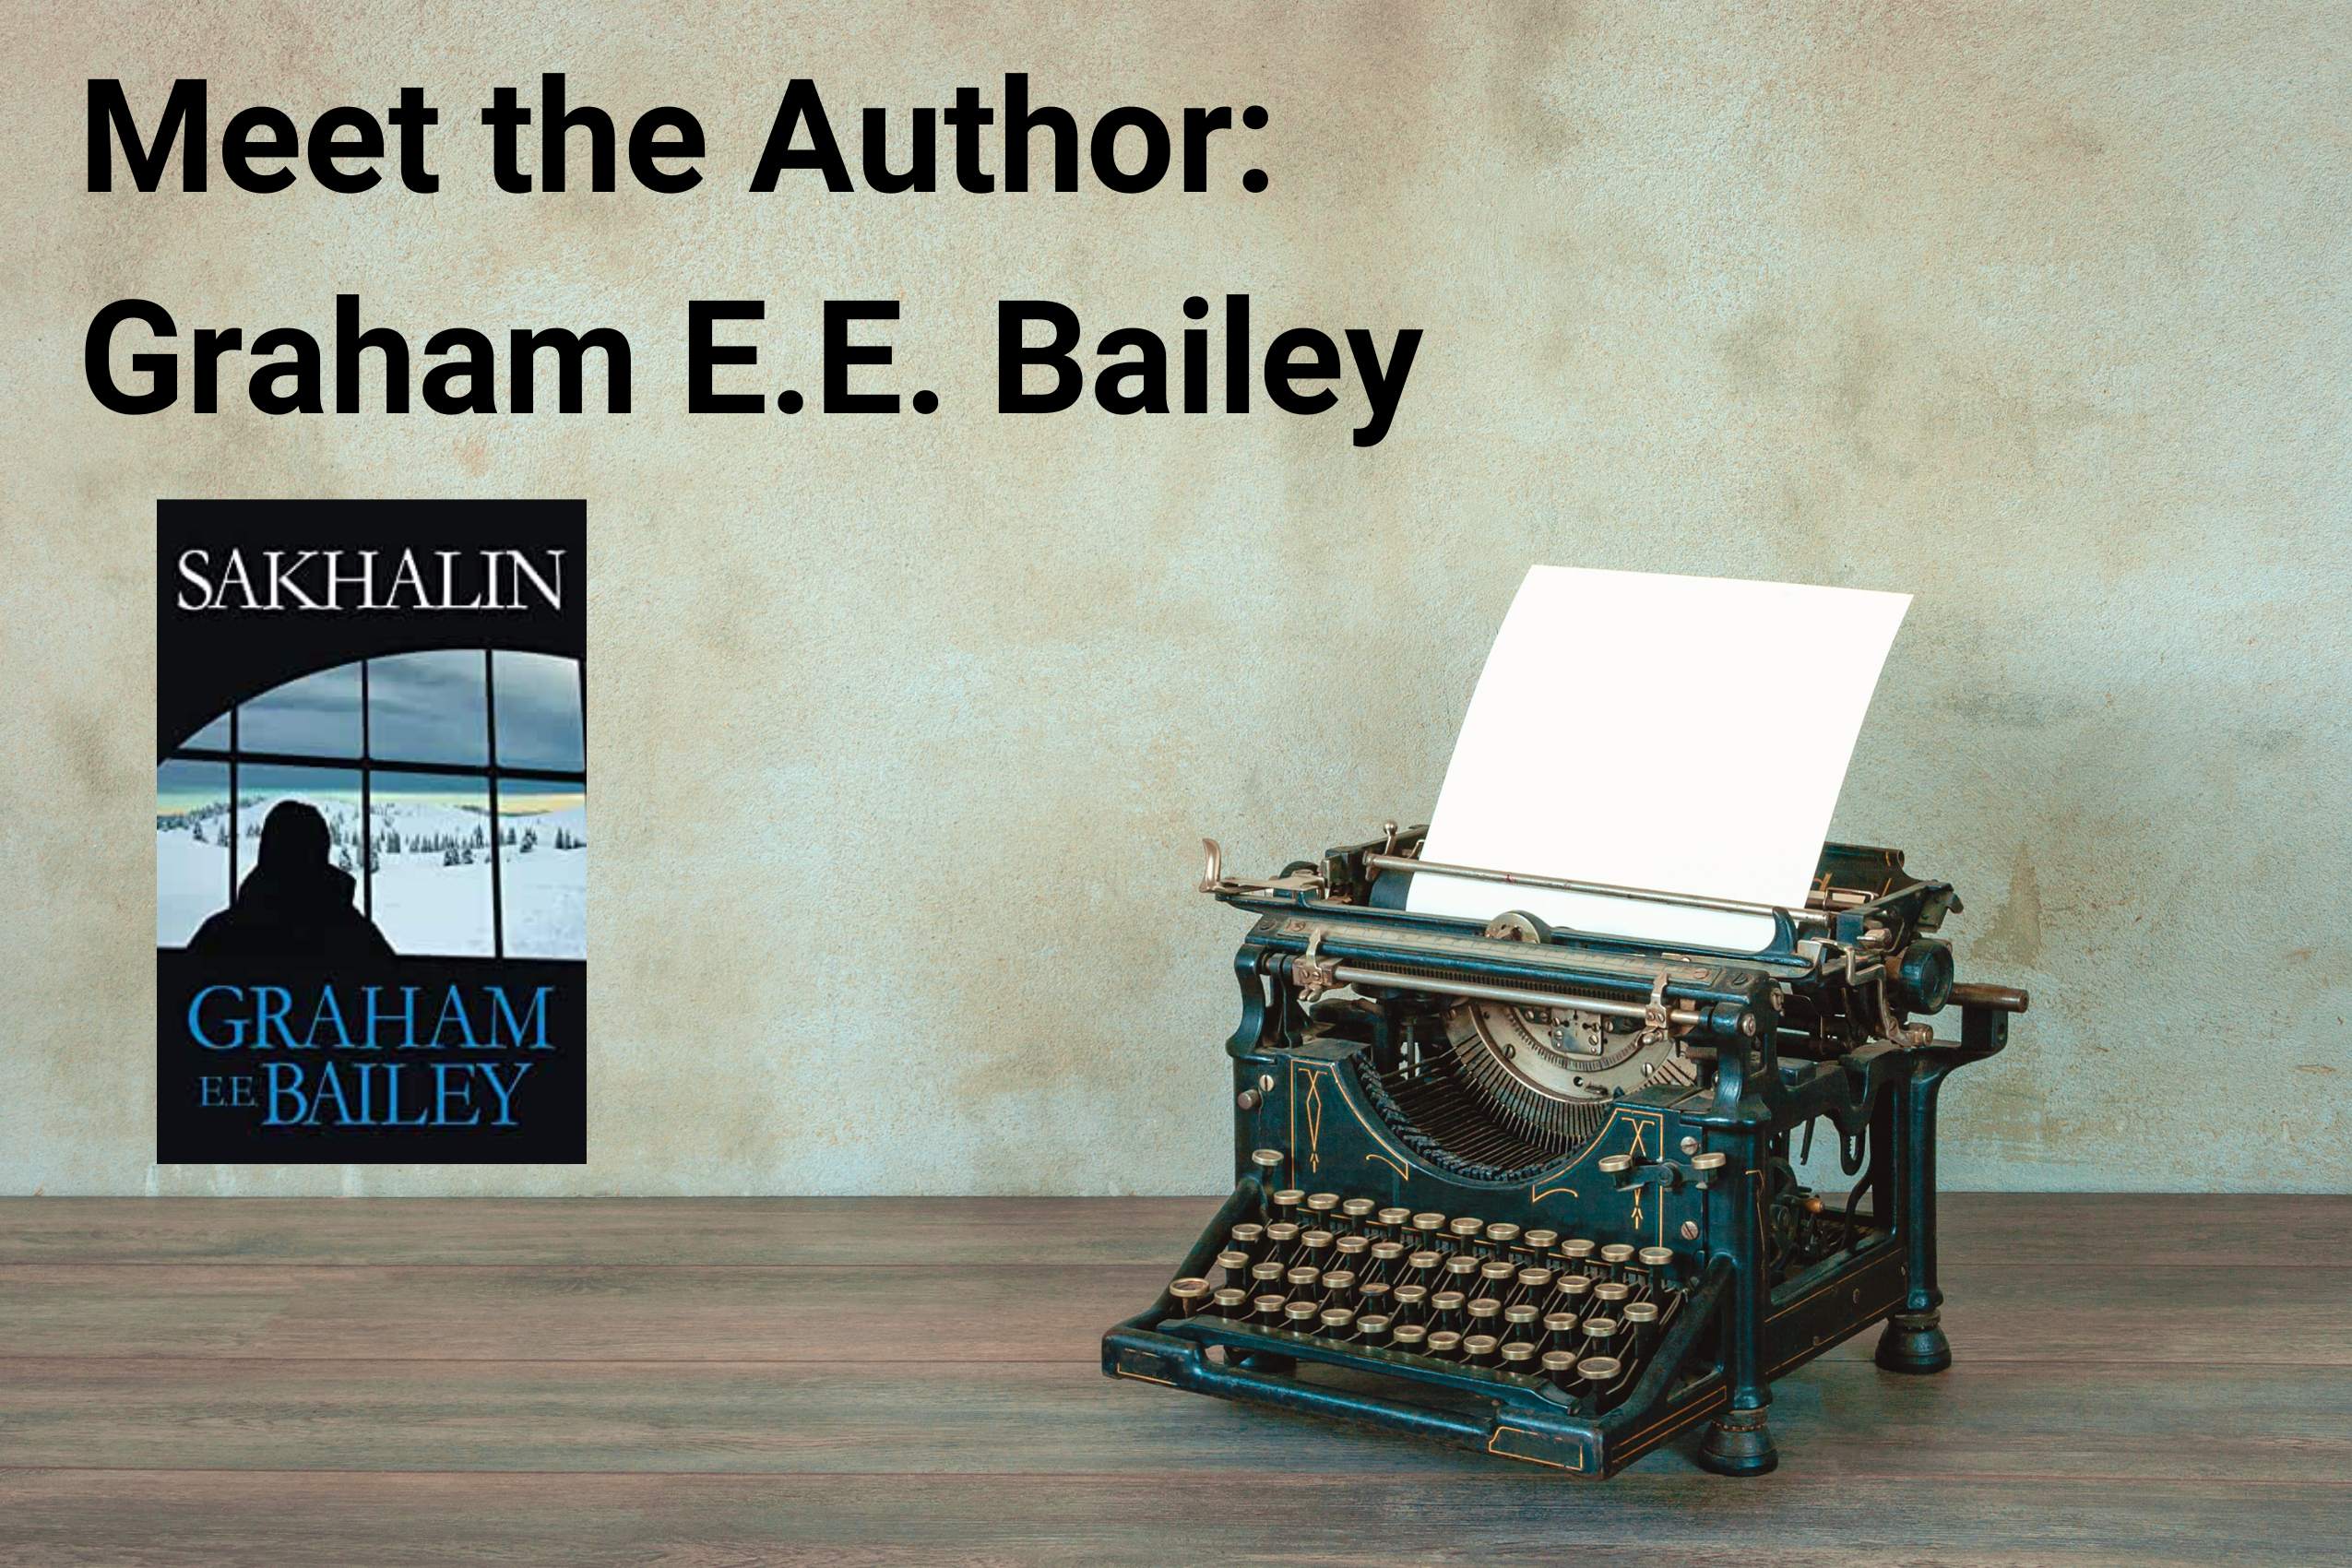 Meet the Author Graham E.E. Bailey